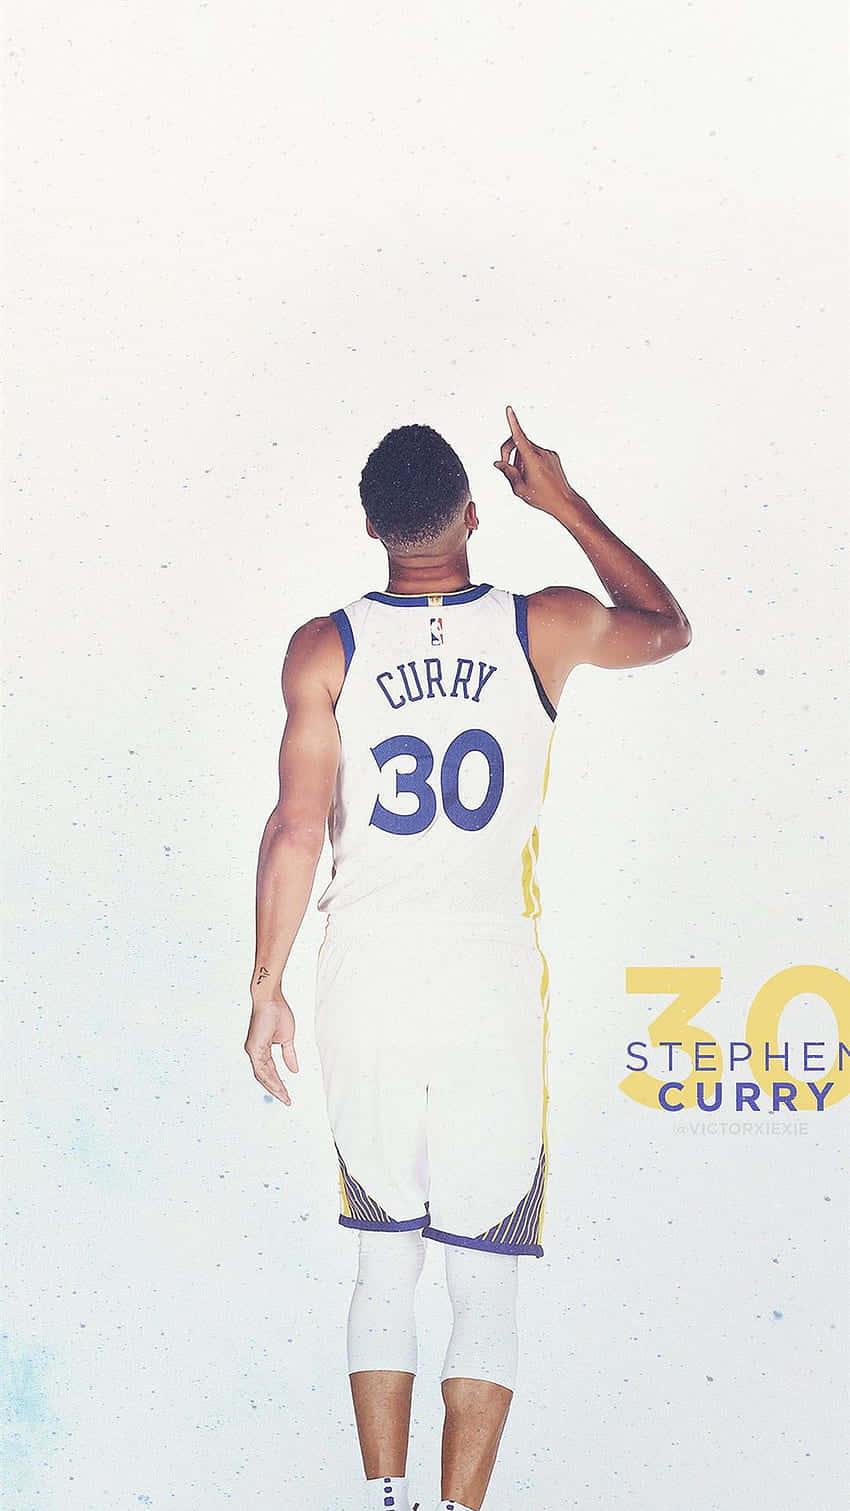 “Steph Curry: Lederen for Golden State Warriors” Wallpaper